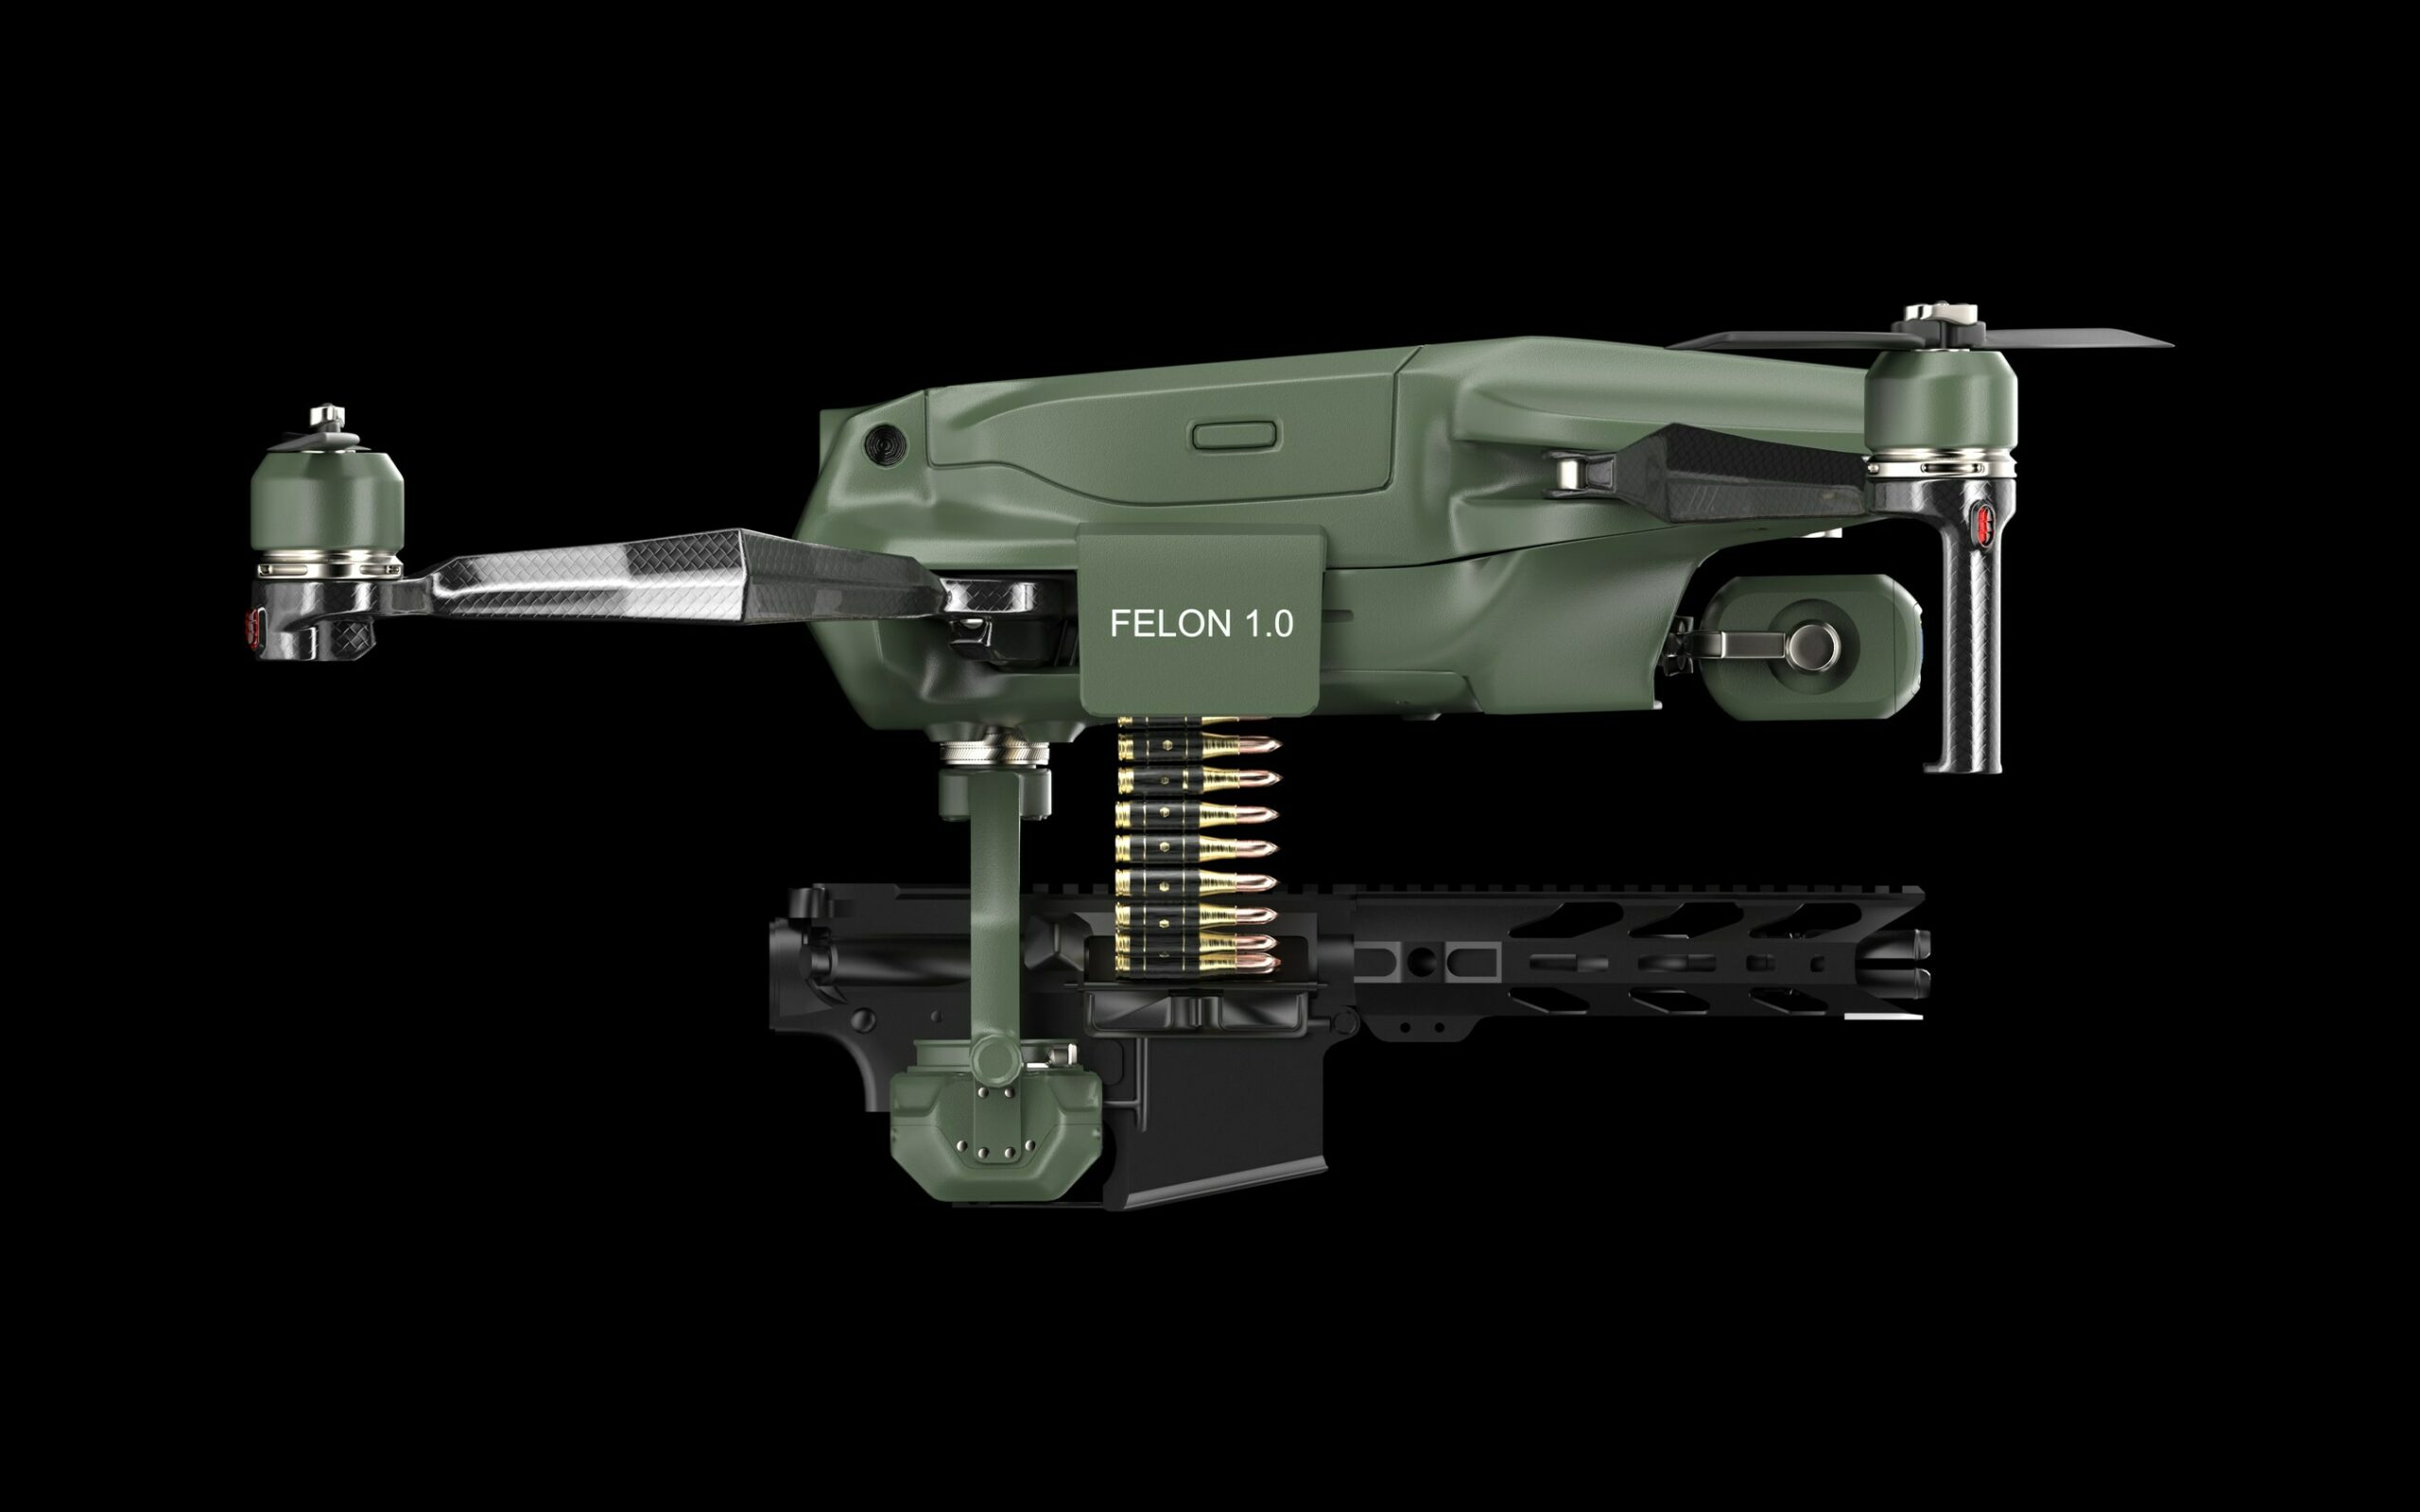 Felon 1.0 armed drone